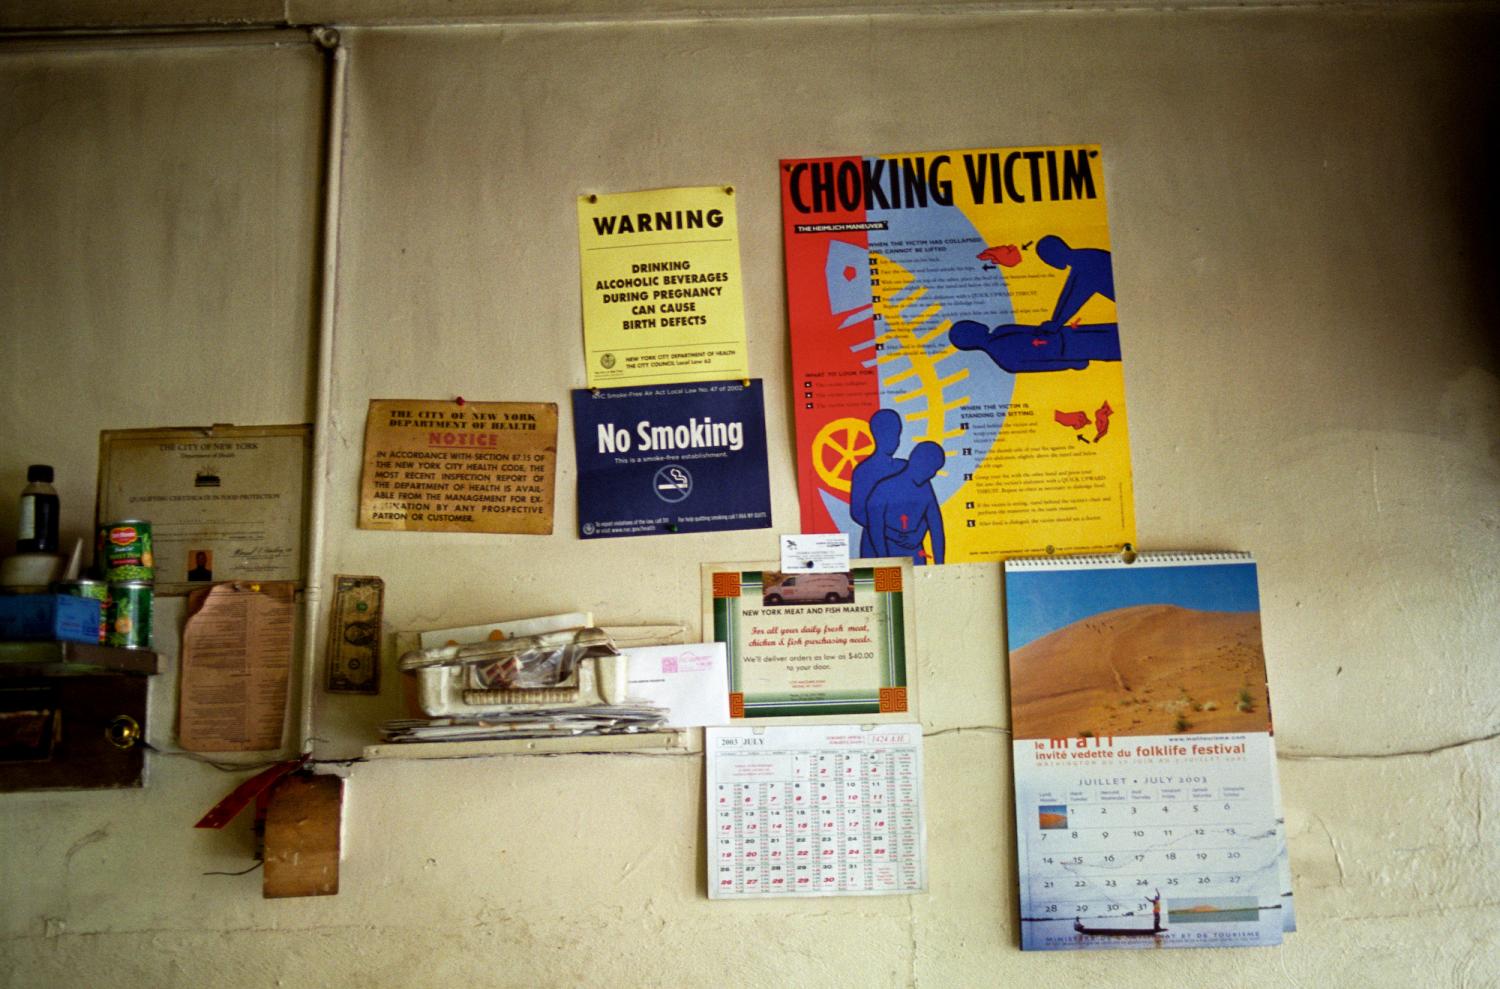 Sur le mur d'un restaurant, parmi divers objets, des avertissements sur les dangers de l'alcool pendant la grossesse, une interdiction de fumer, des instructions de réanimation et des informations sur l'inspection sanitaire. New York, juillet 2003.